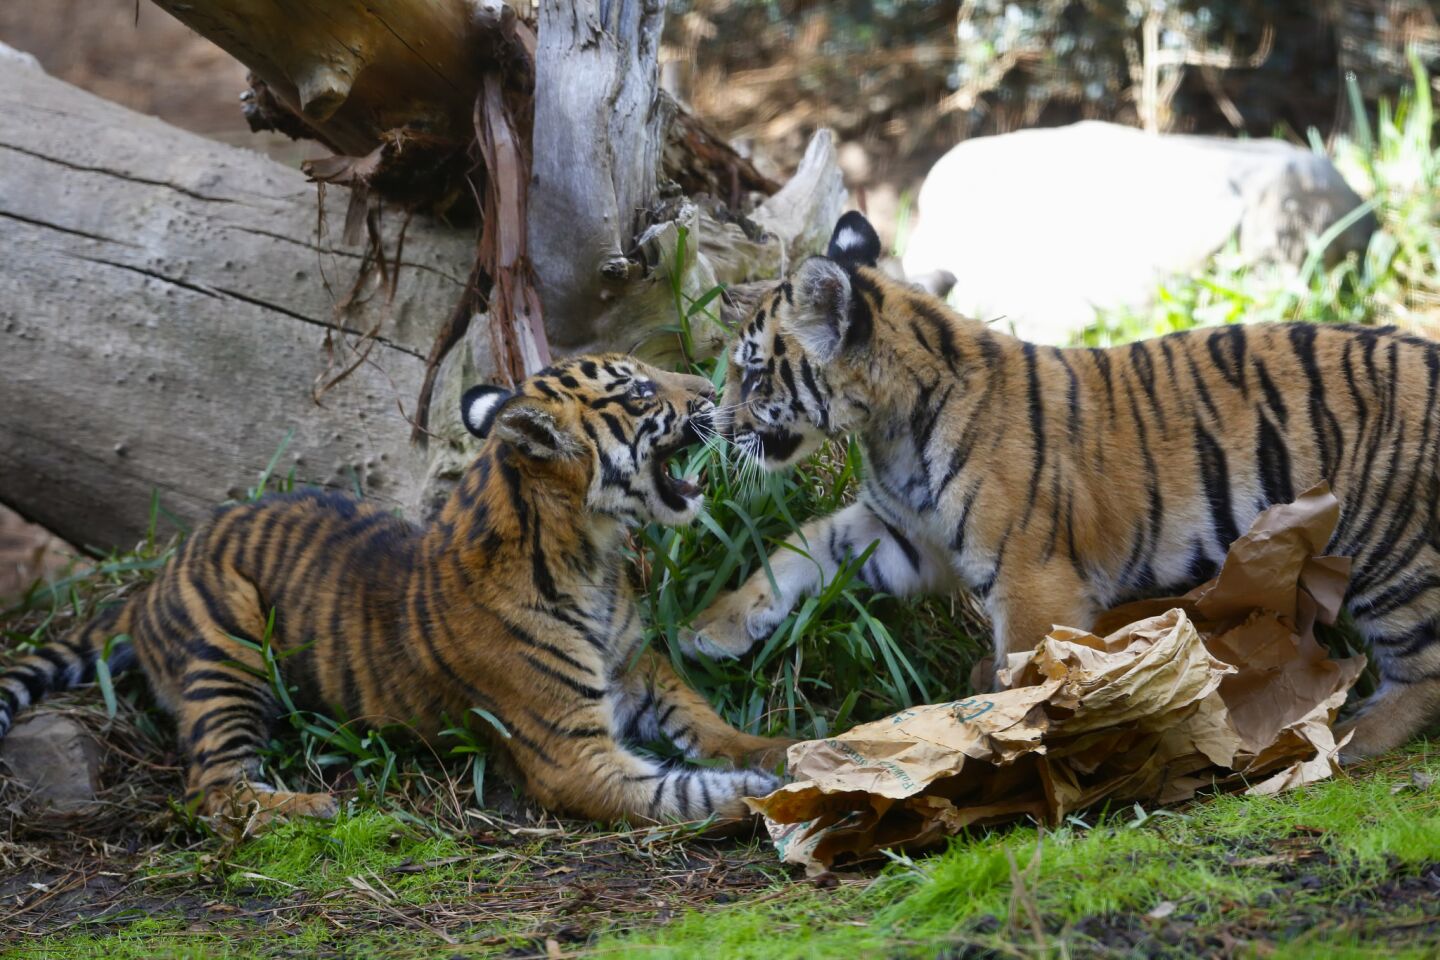 A rescued Bengal tiger cub and his companion, a Sumatran tiger cub